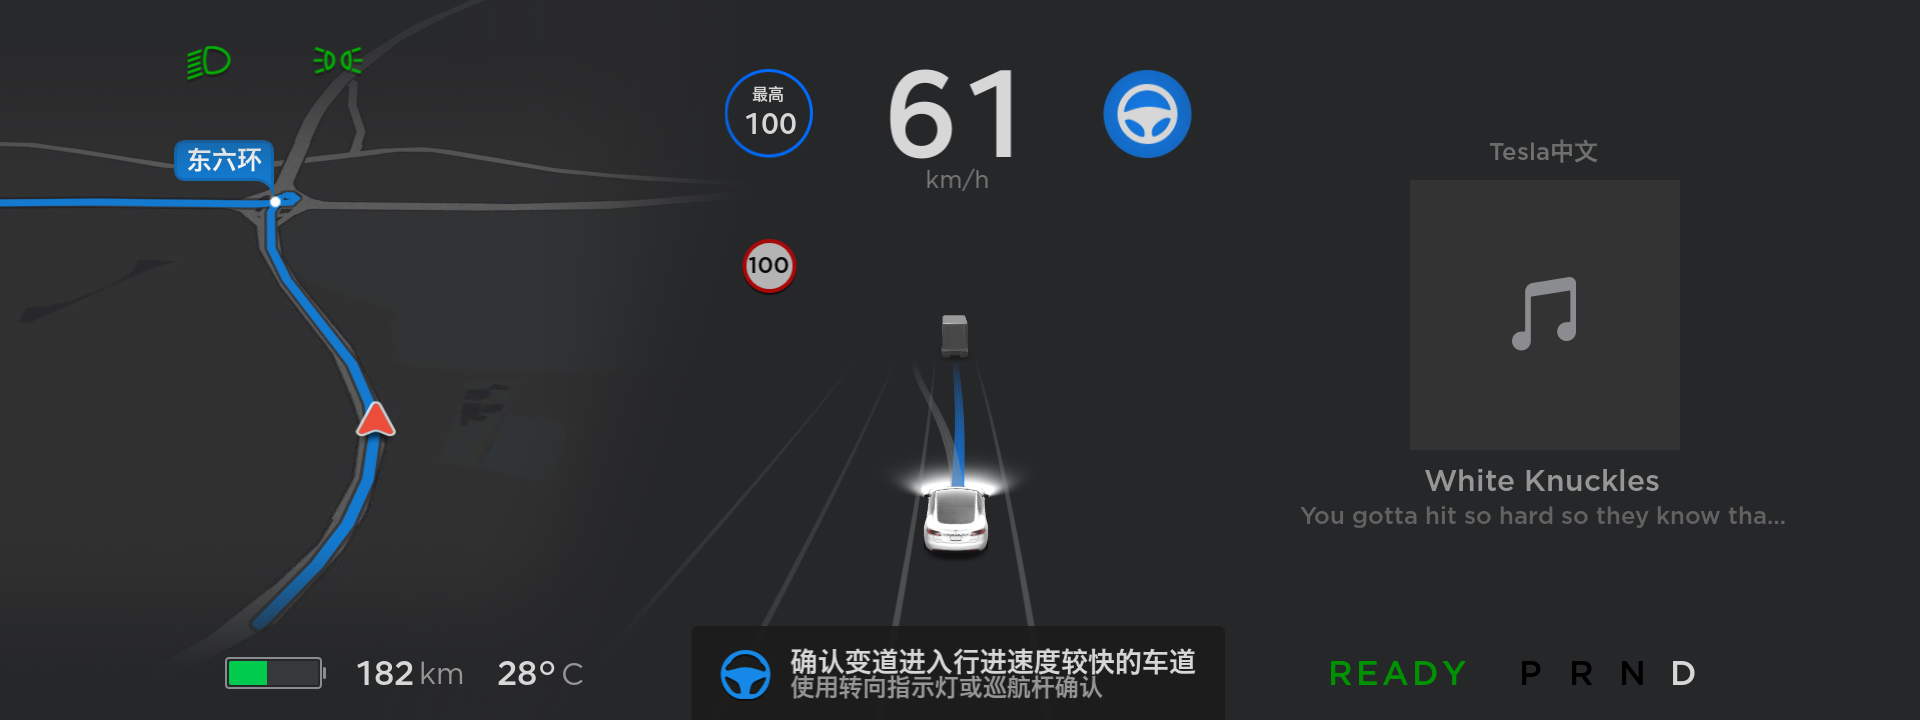 8-特斯拉在中国首次正式推出自动辅助驾驶导航功能.png